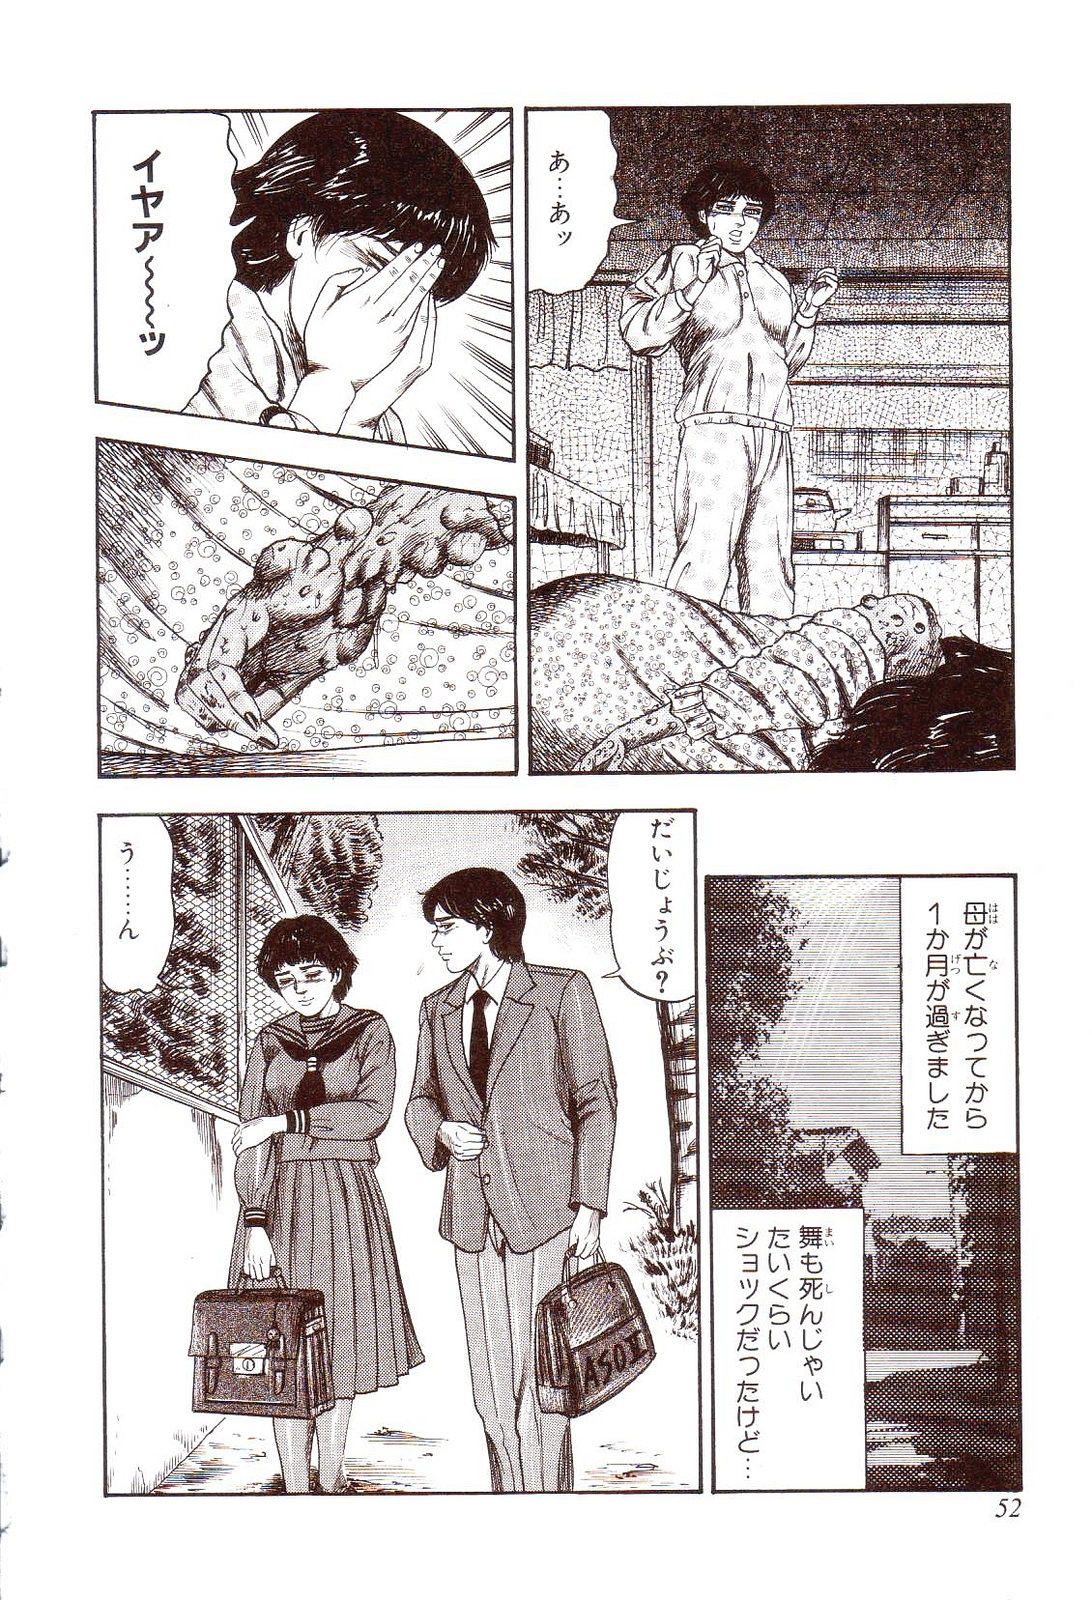 [Sanjou Tomomi] Inu ni Naritai -kyoufu manga shugyoku sakuhinshiyuu- 56